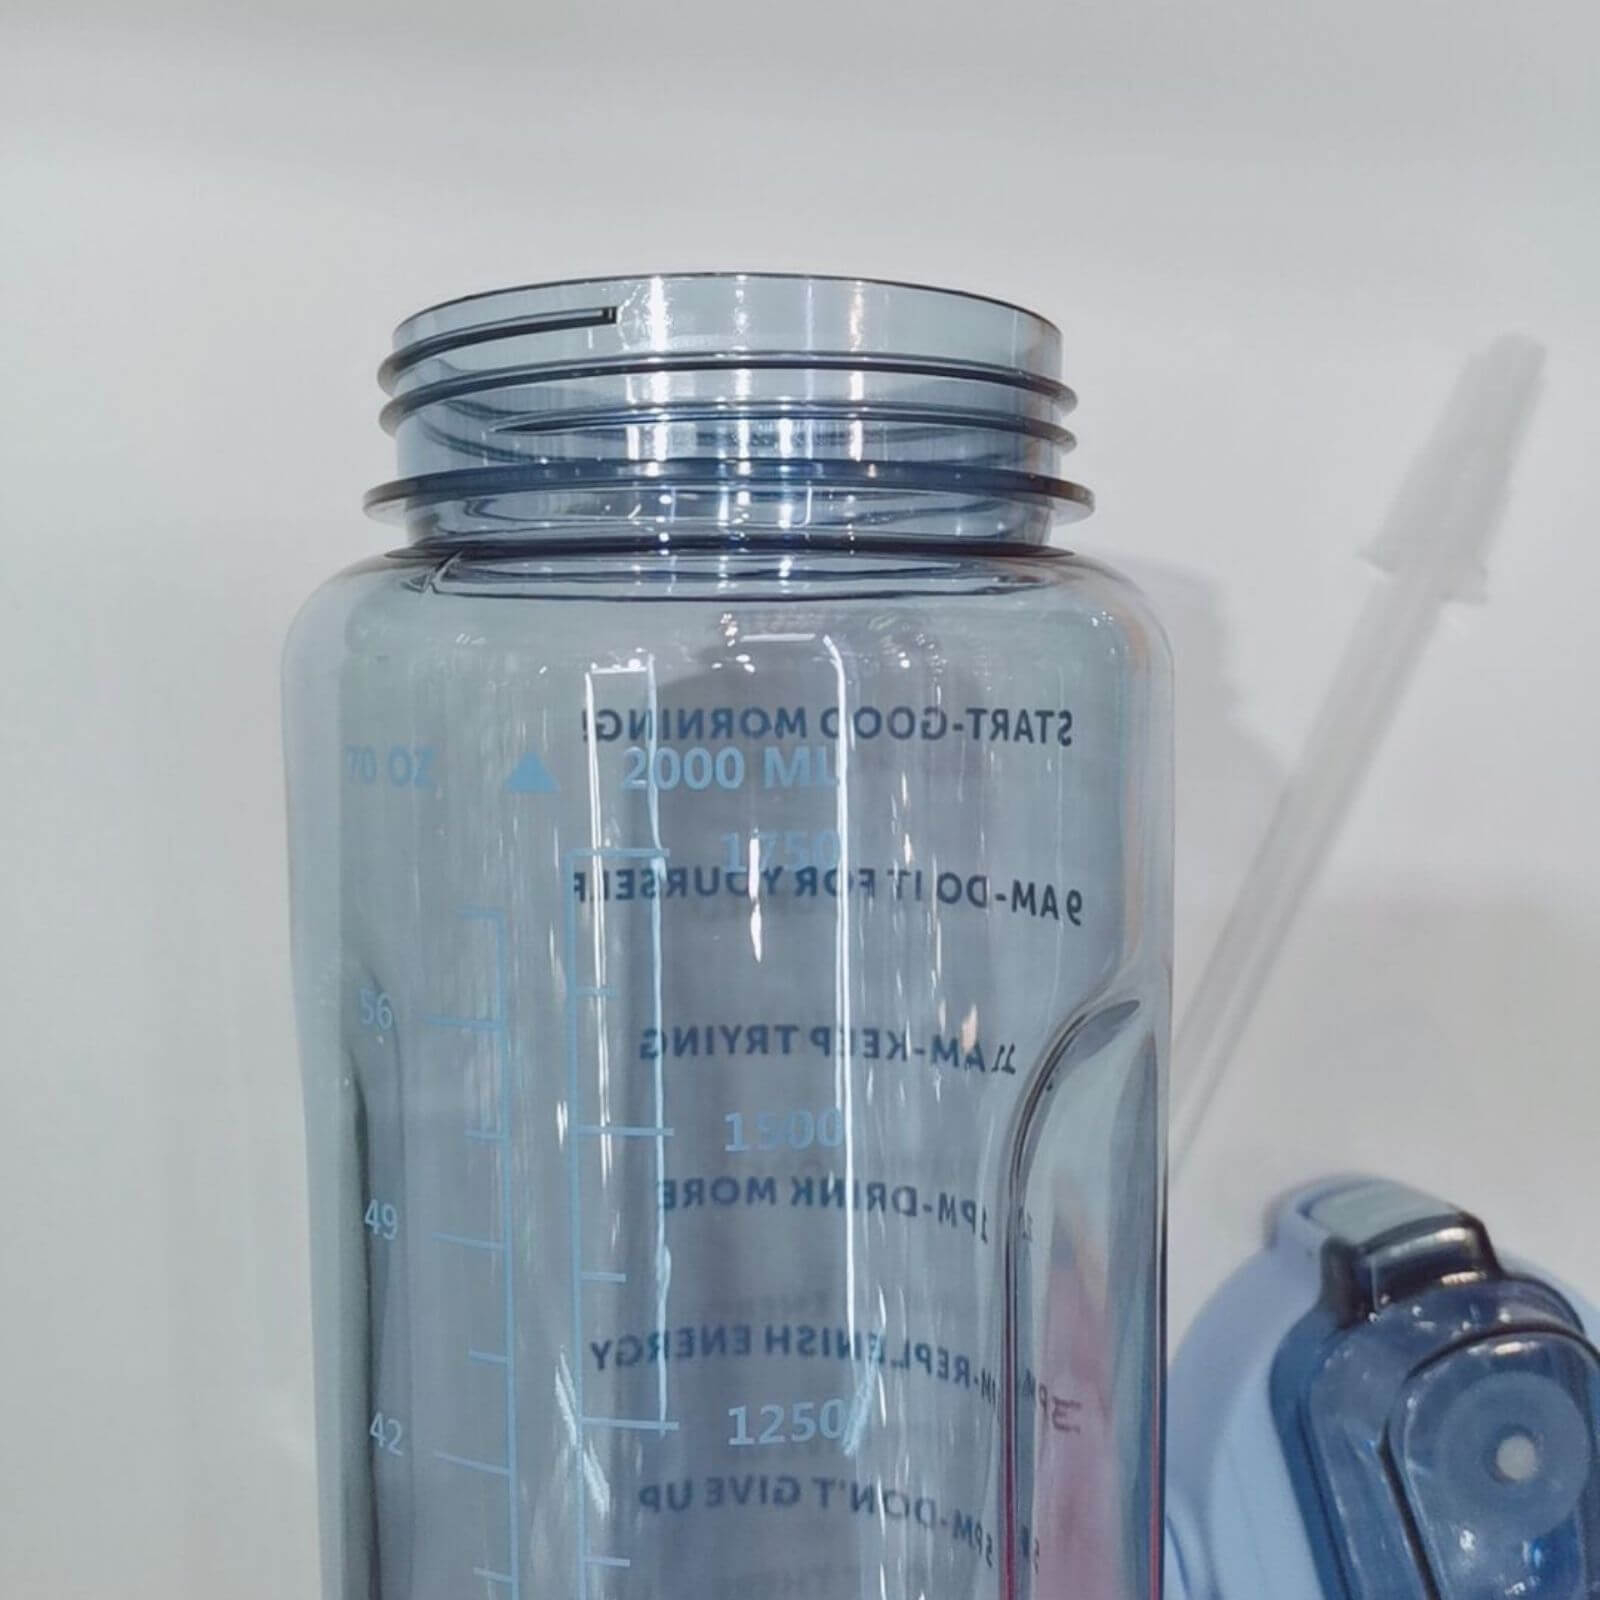 cassette surgeon Revolutionary Sticla de apa 2L cu marcaje de timp si mesaje motivationale,Albastru